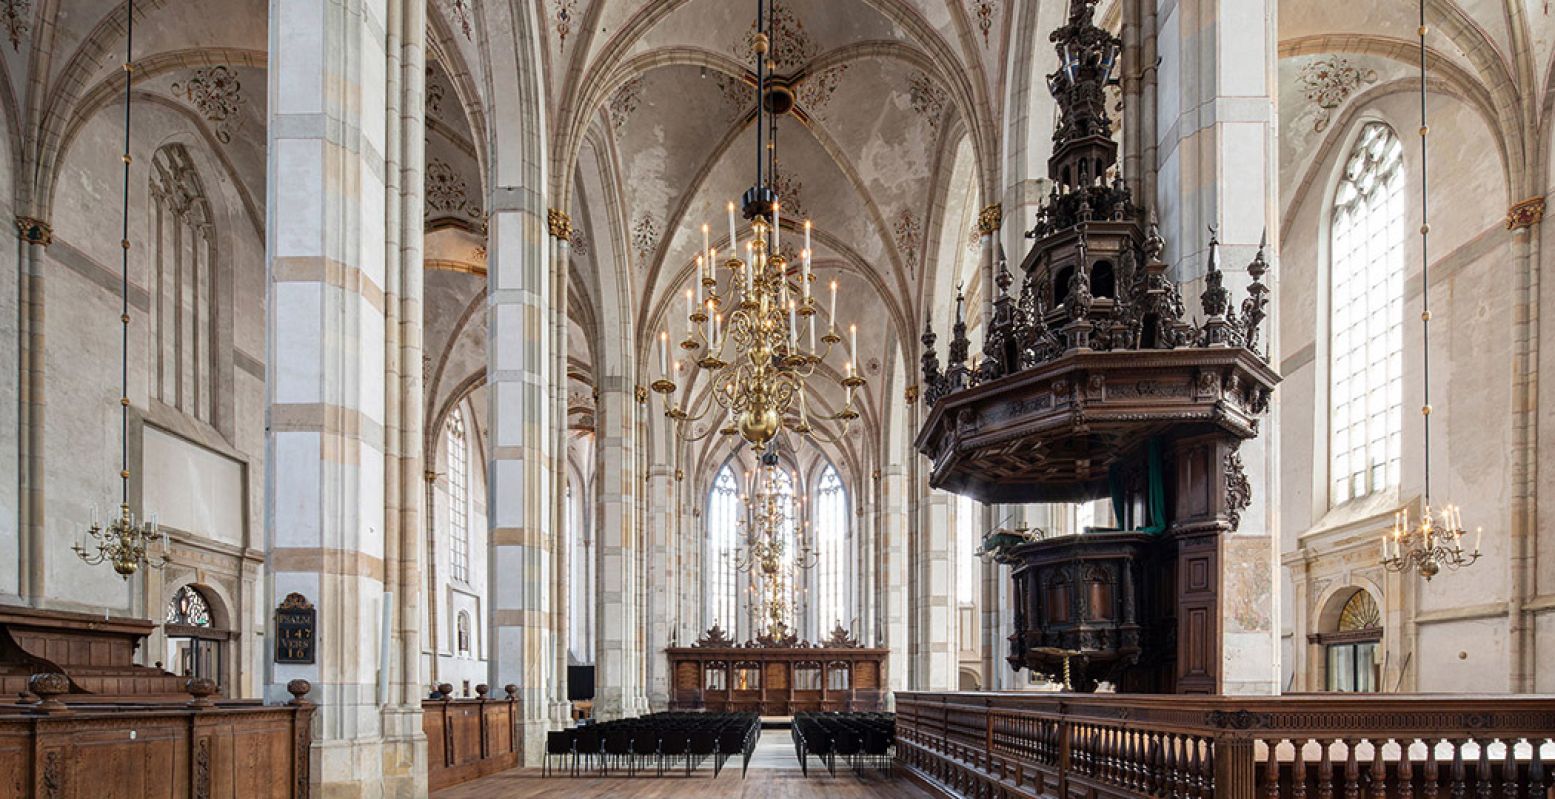 Bekijk het prachtige interieur van de nieuwste kerk in het Grootste Museum van Nederland: Academiehuis Grote Kerk Zwolle. Met rechts de imposante preekstoel uit de zeventiende eeuw. Foto:  Frank Hanswijk